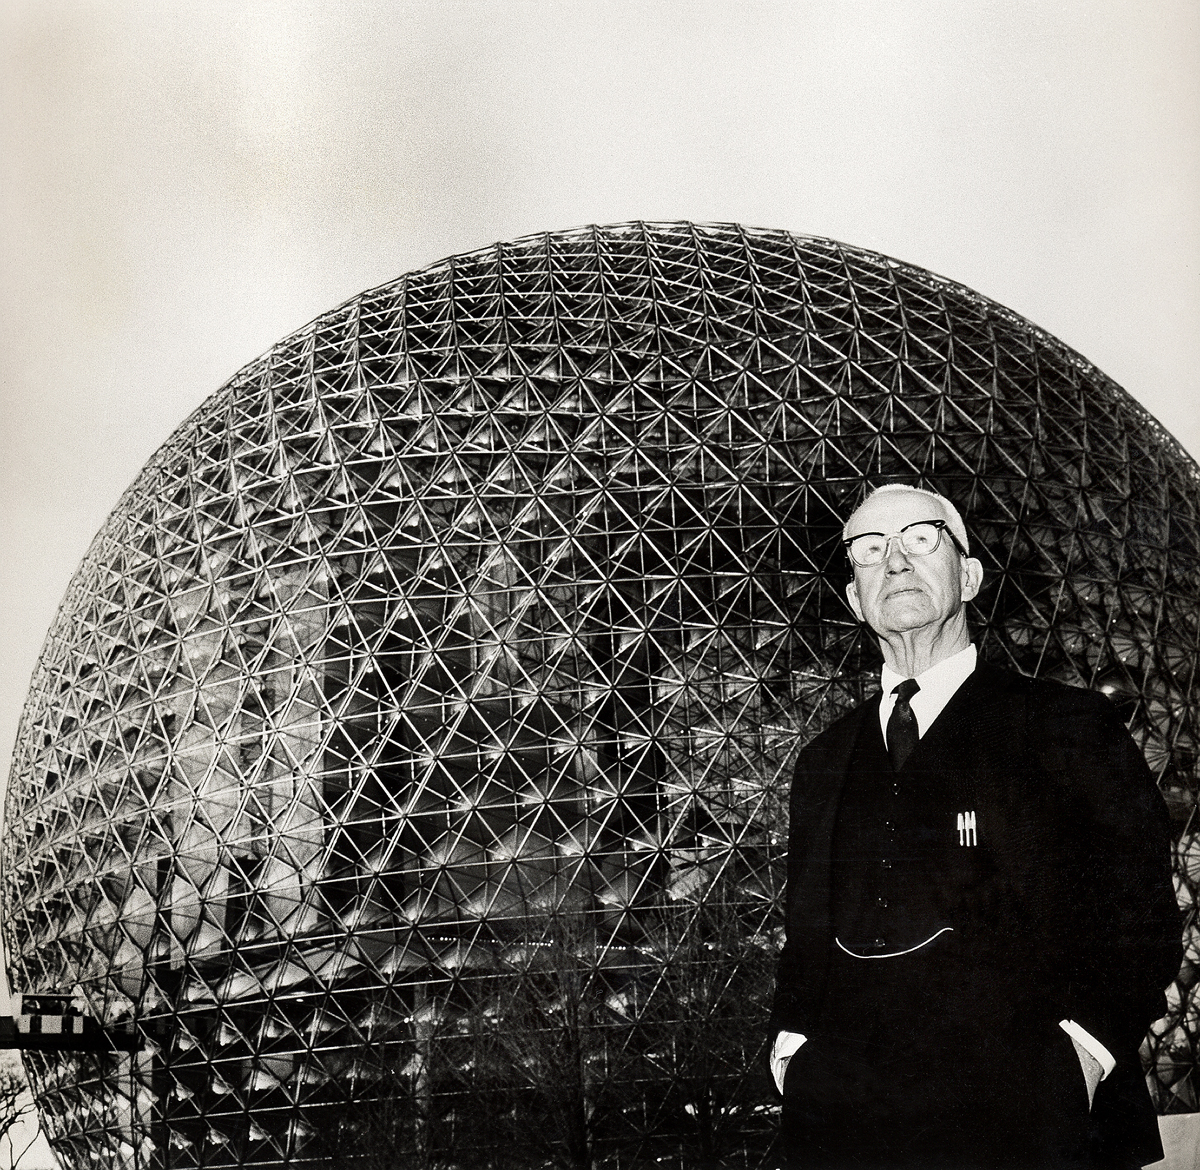 Domes – Buckminster Fuller Institute